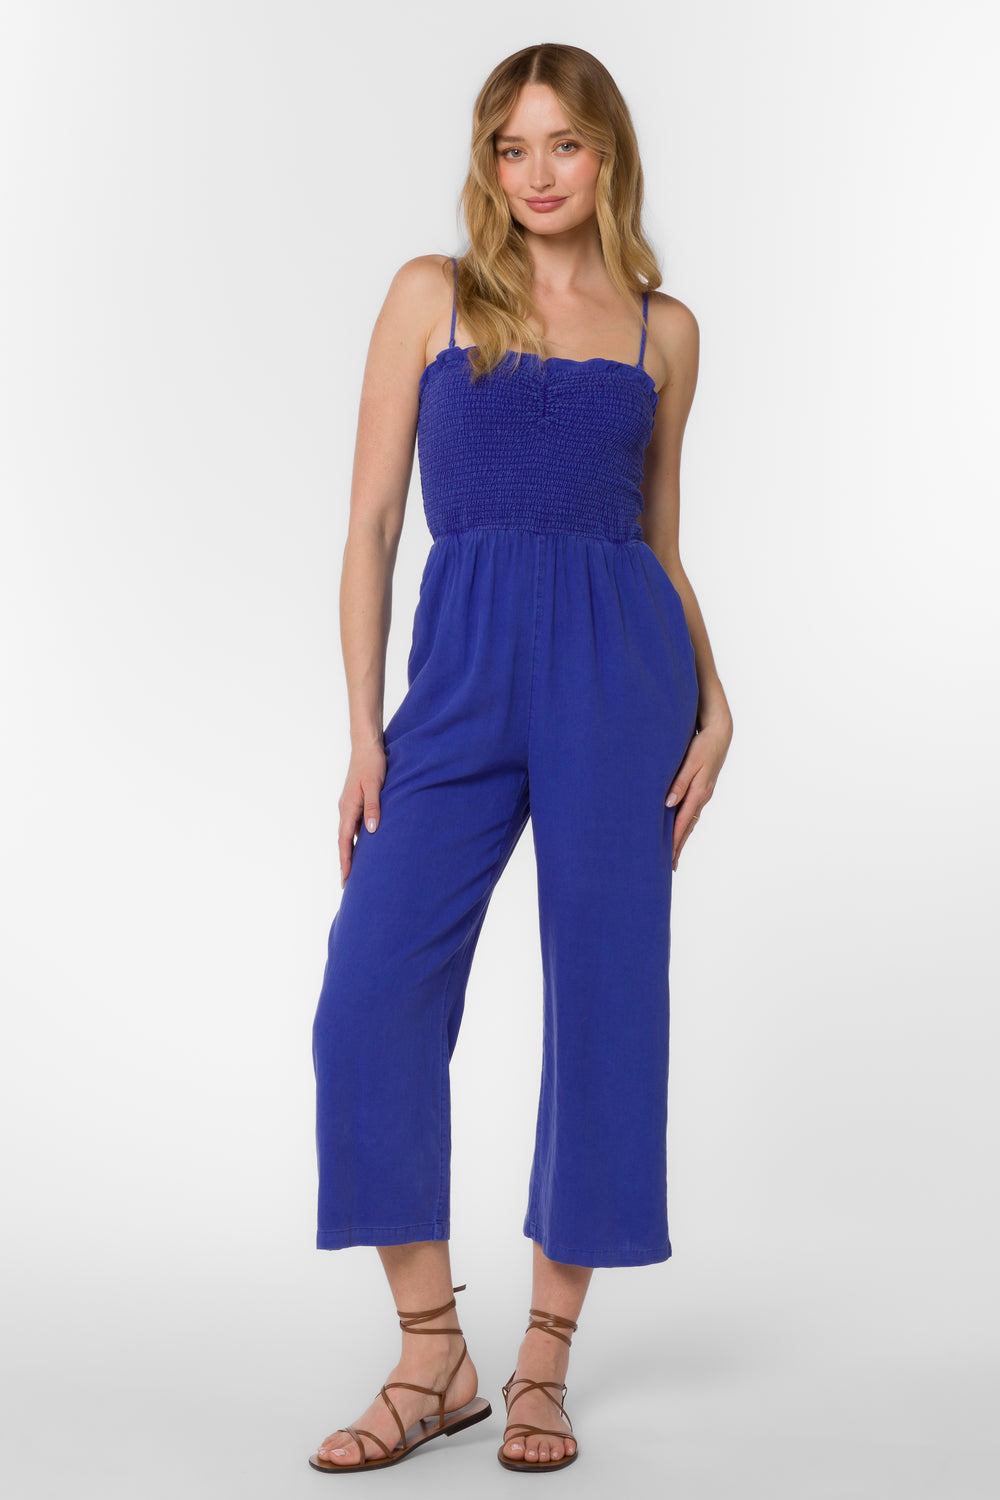 Tasha Iris Blue Jumpsuit - Jumpsuits & Rompers - Velvet Heart Clothing